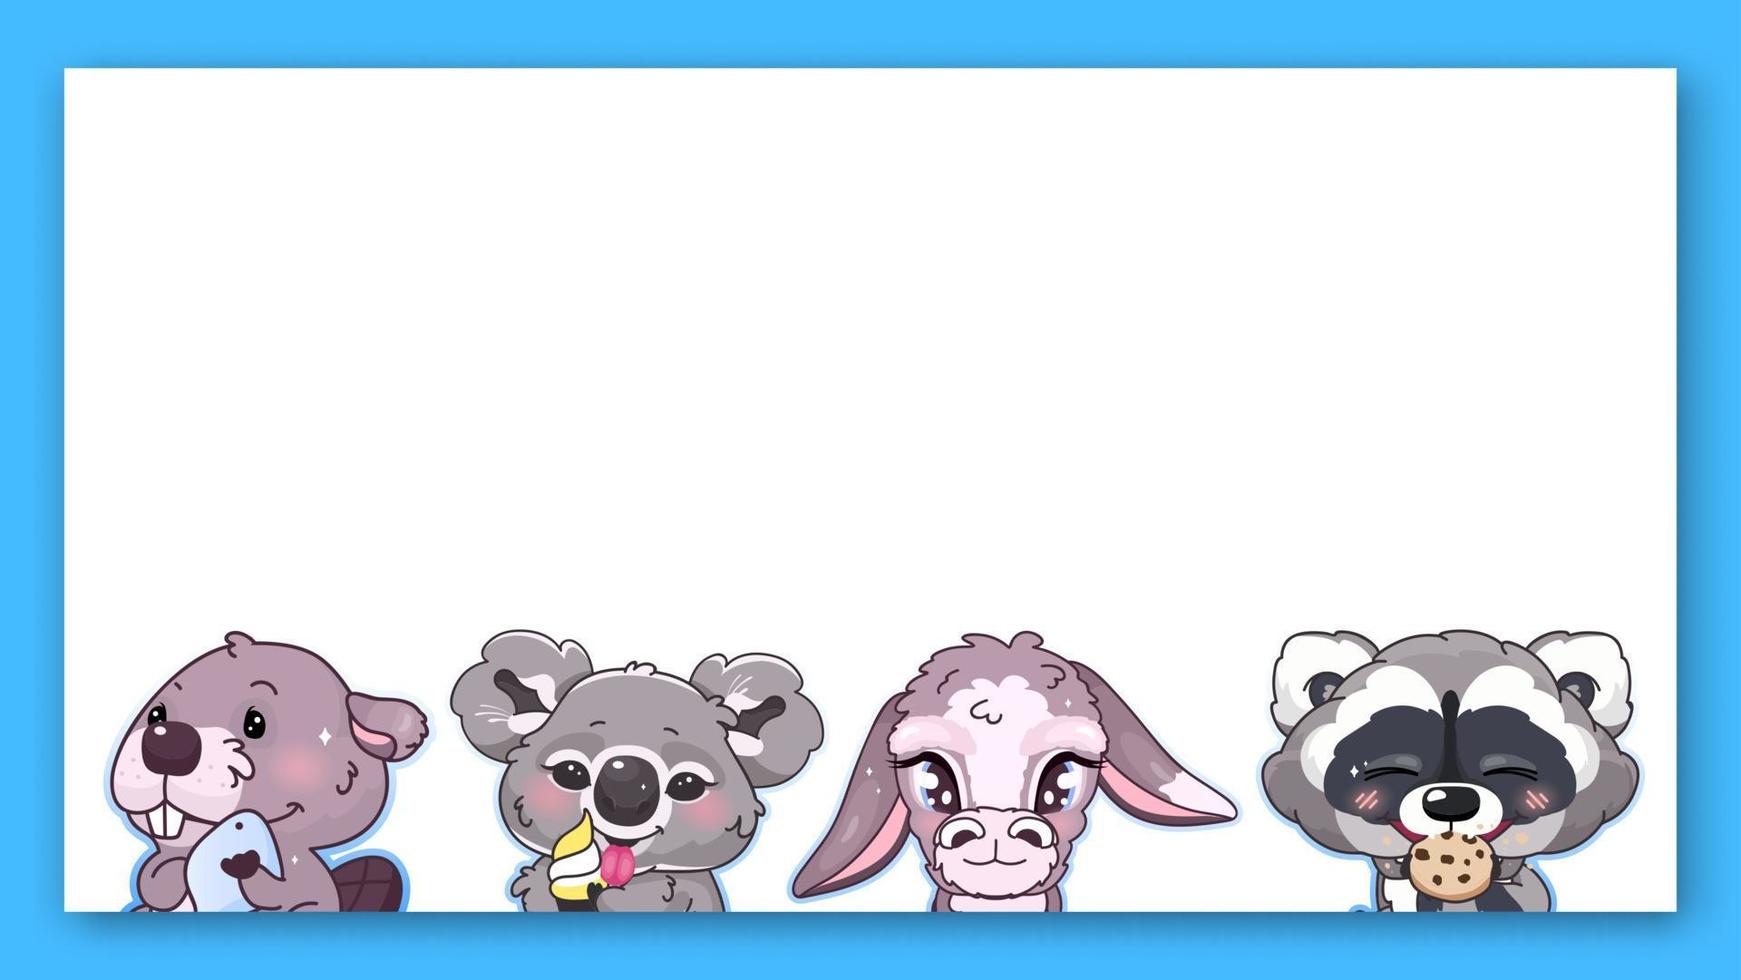 Marco de vector de personajes de kawaii de animales lindos. anime bebé koala, burro, mapache comiendo galleta, castor emoji borde cuadrado aislado con espacio de texto. ilustración de libro para niños, elemento de diseño de cartel